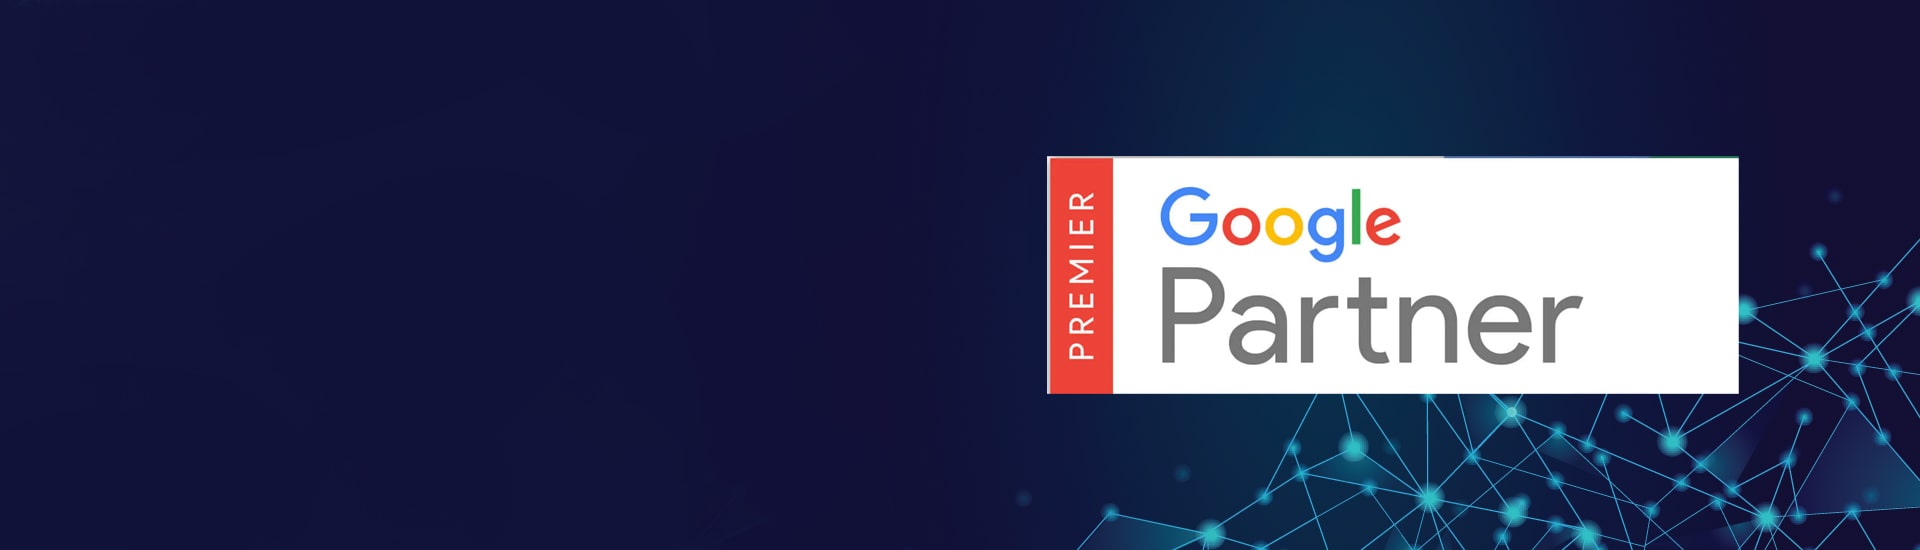 Premium Google Partner